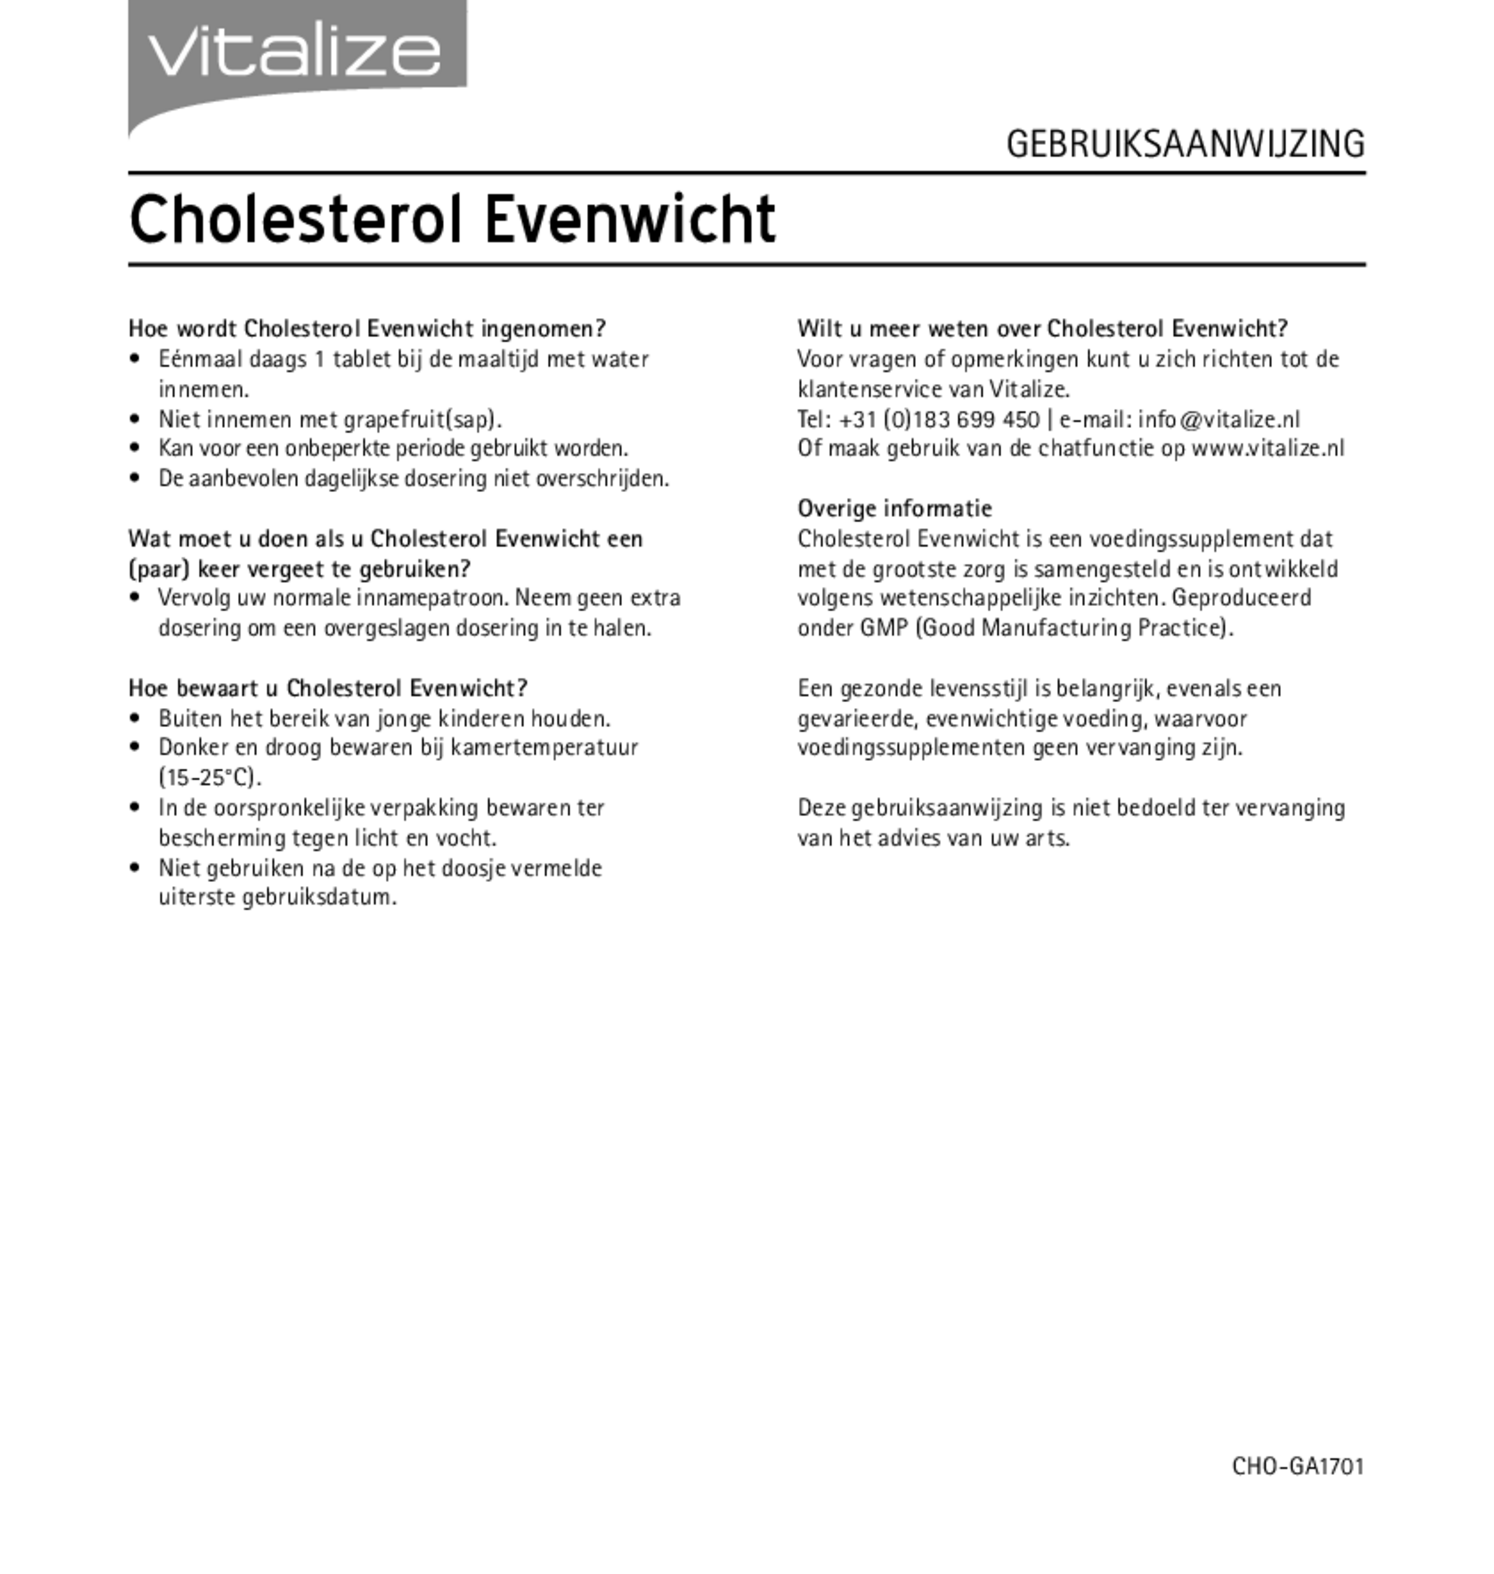 Cholesterol Evenwicht Tabletten afbeelding van document #2, gebruiksaanwijzing